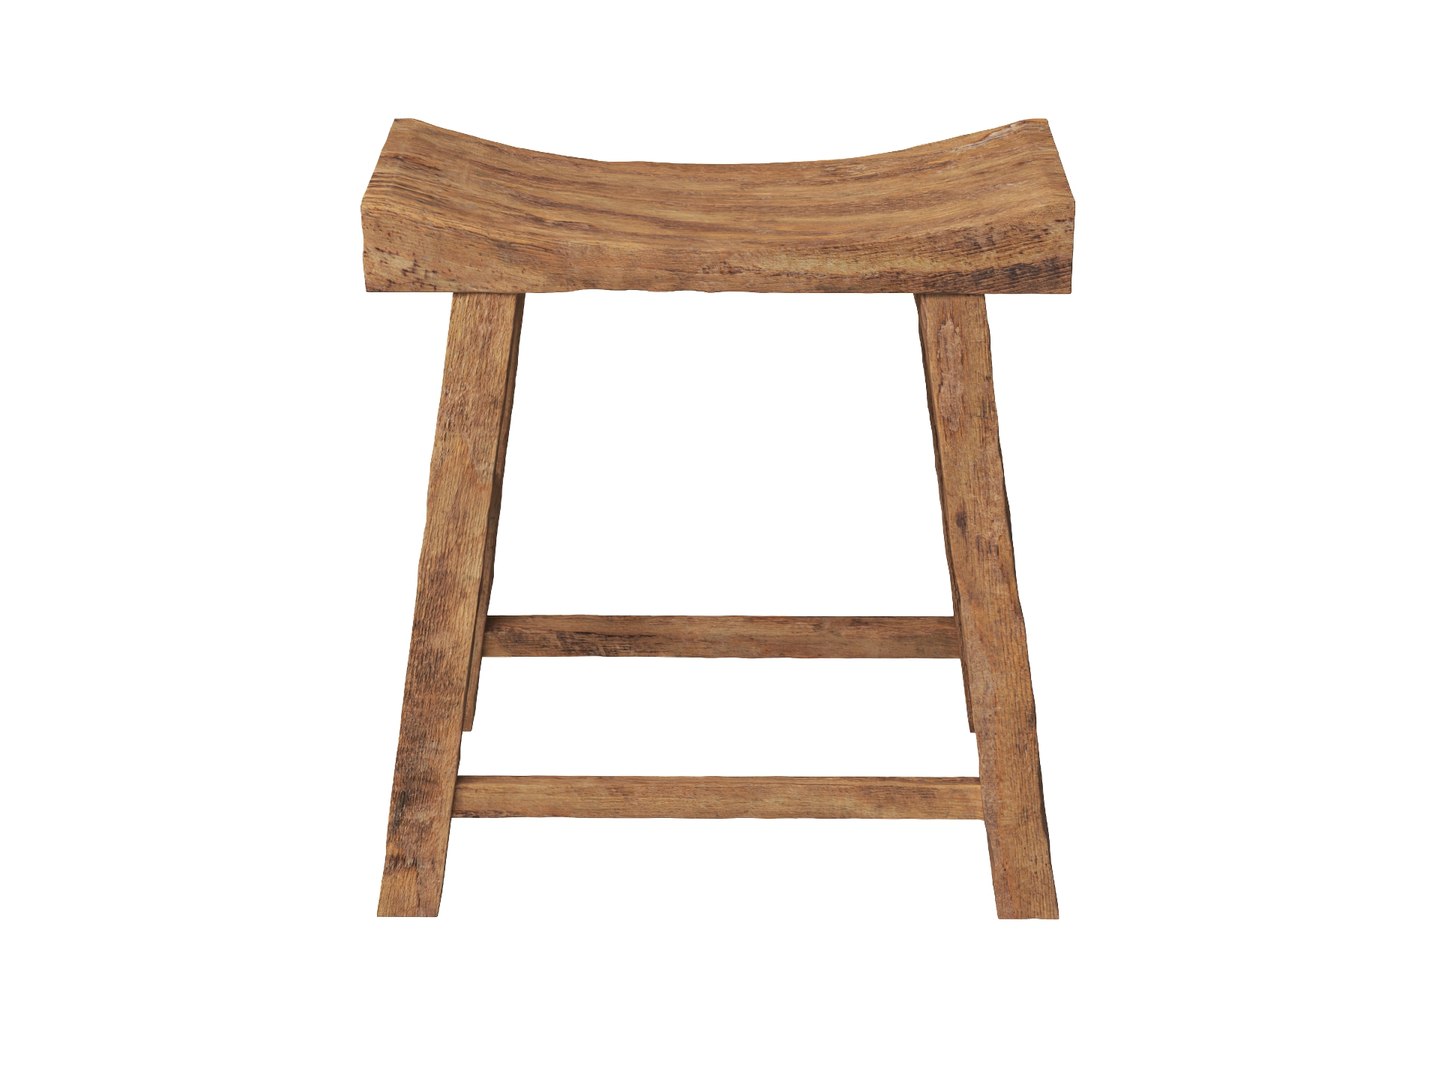 Old Wooden Chair model - TurboSquid 1810981